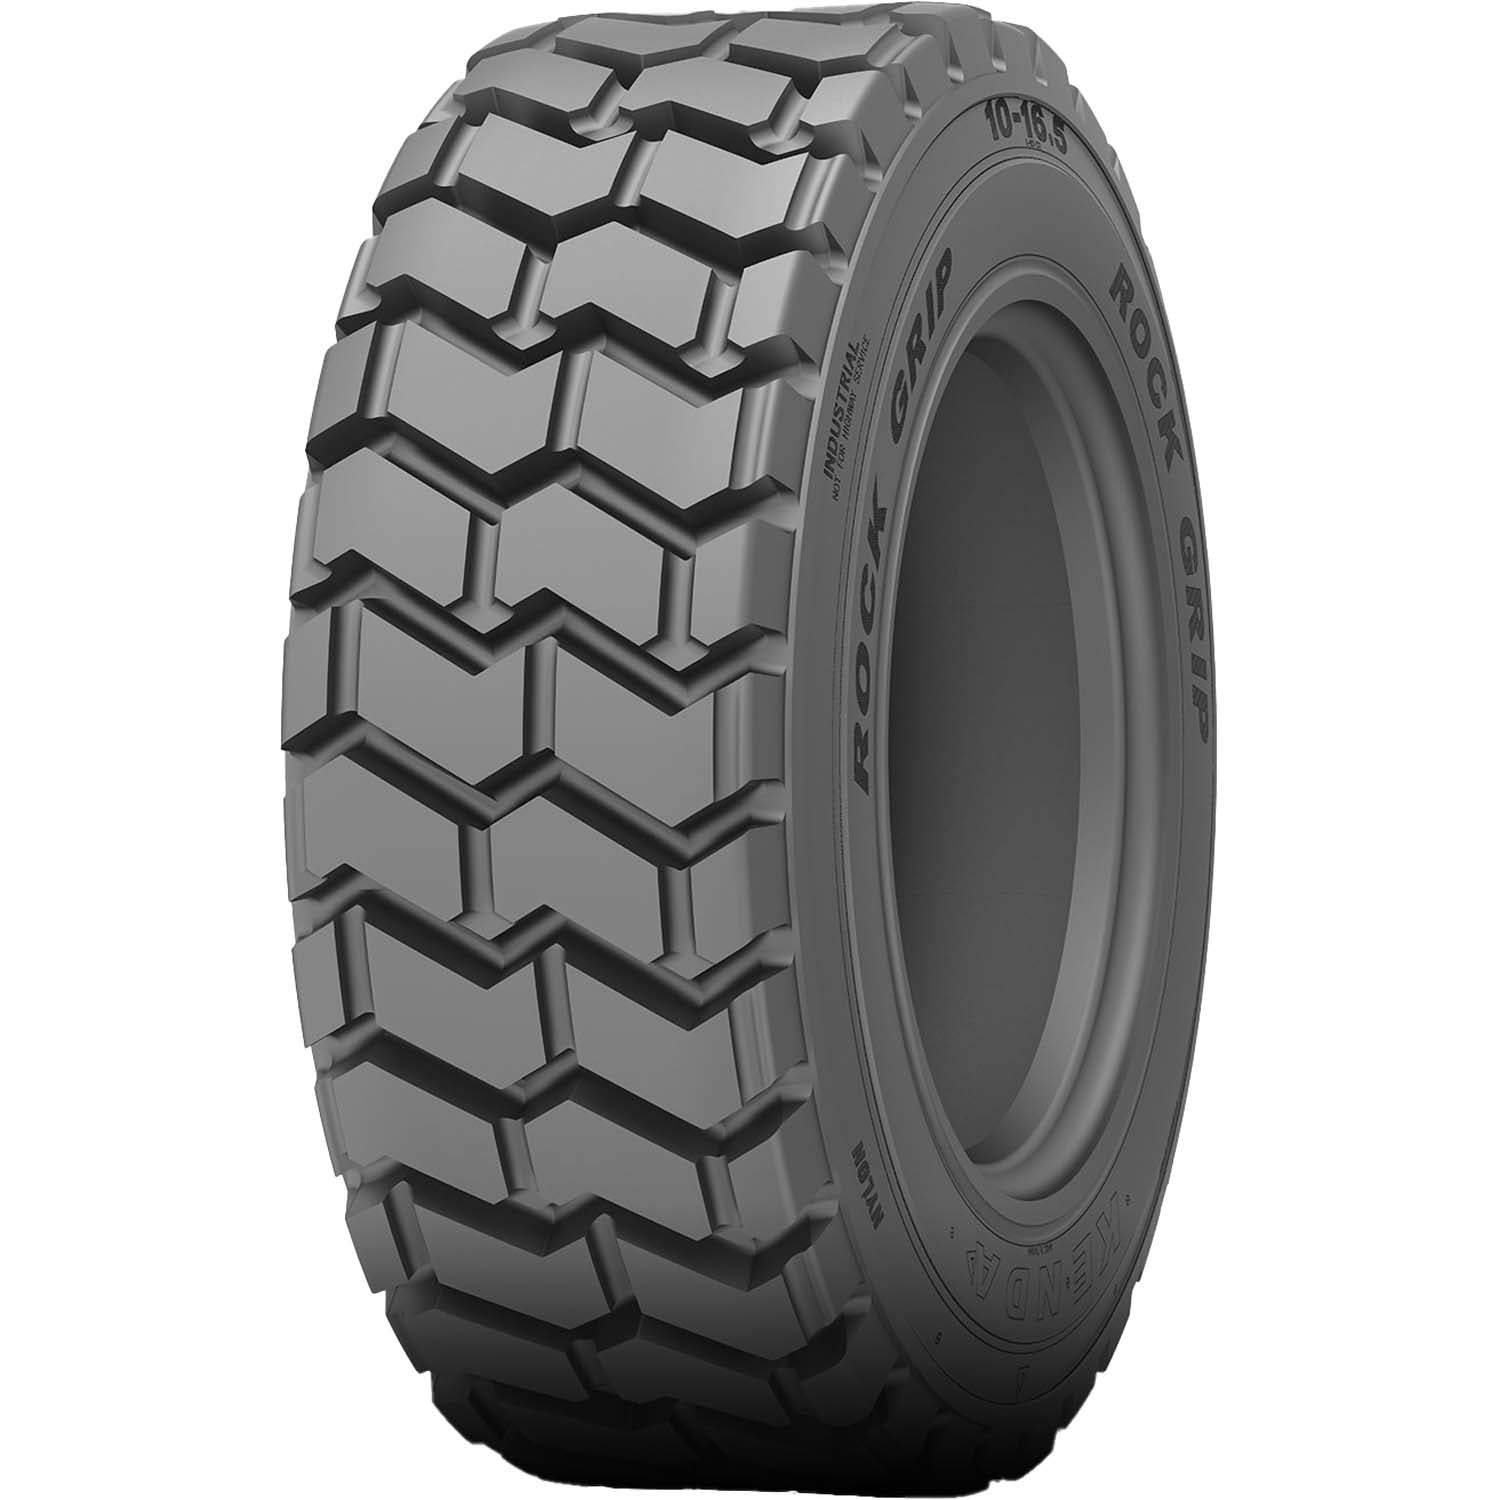 Kenda Rock Grip K601 Skid Steer Tire 10ply 12-16.5